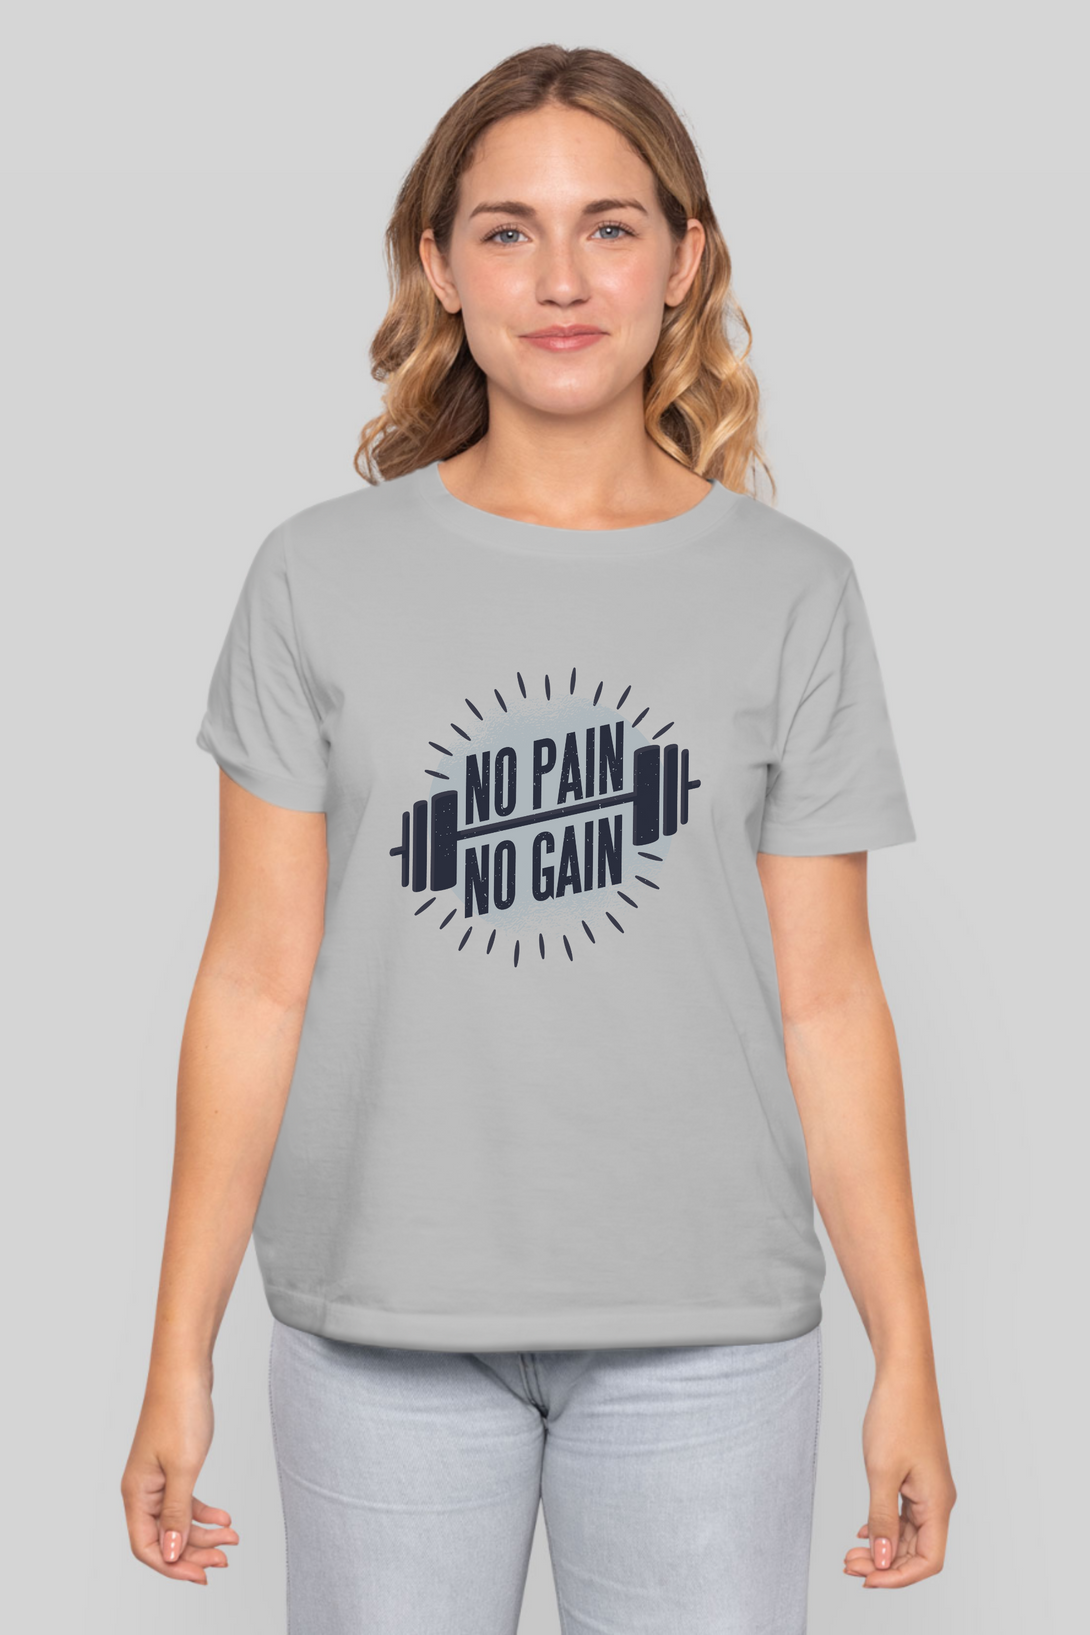 No Pain No Gain Printed T-Shirt For Women - WowWaves - 8